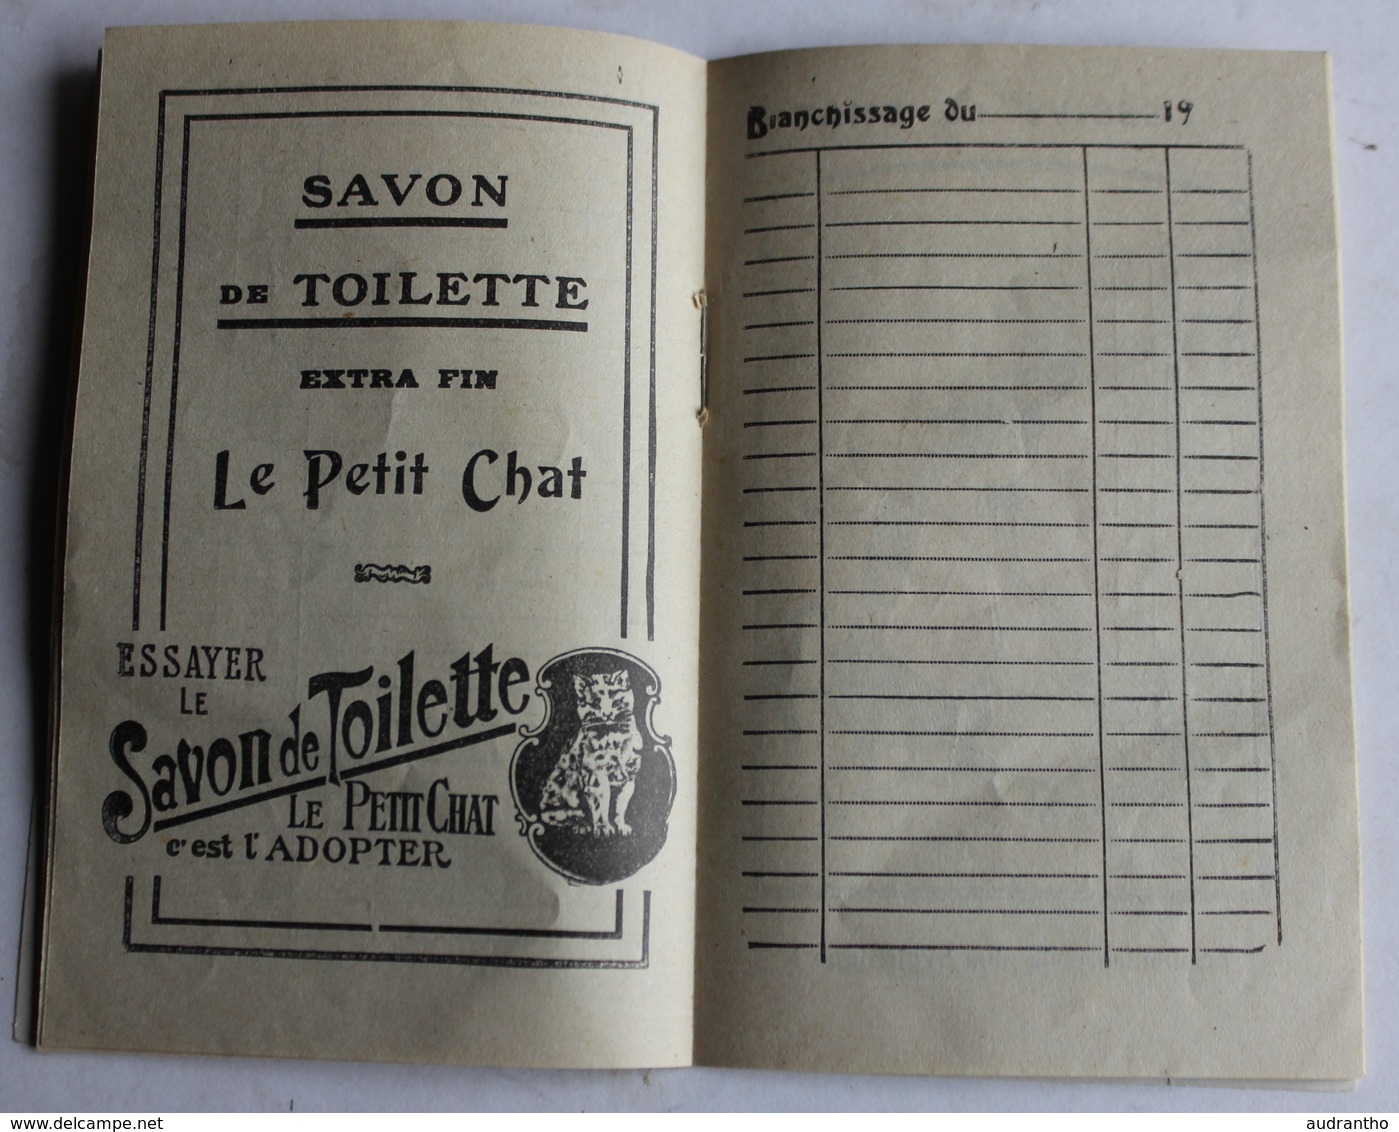 beau calendrier publicitaire 1929 savon le chat C. Ferrier & Cie Marseille carnet de blanchissage illustrations